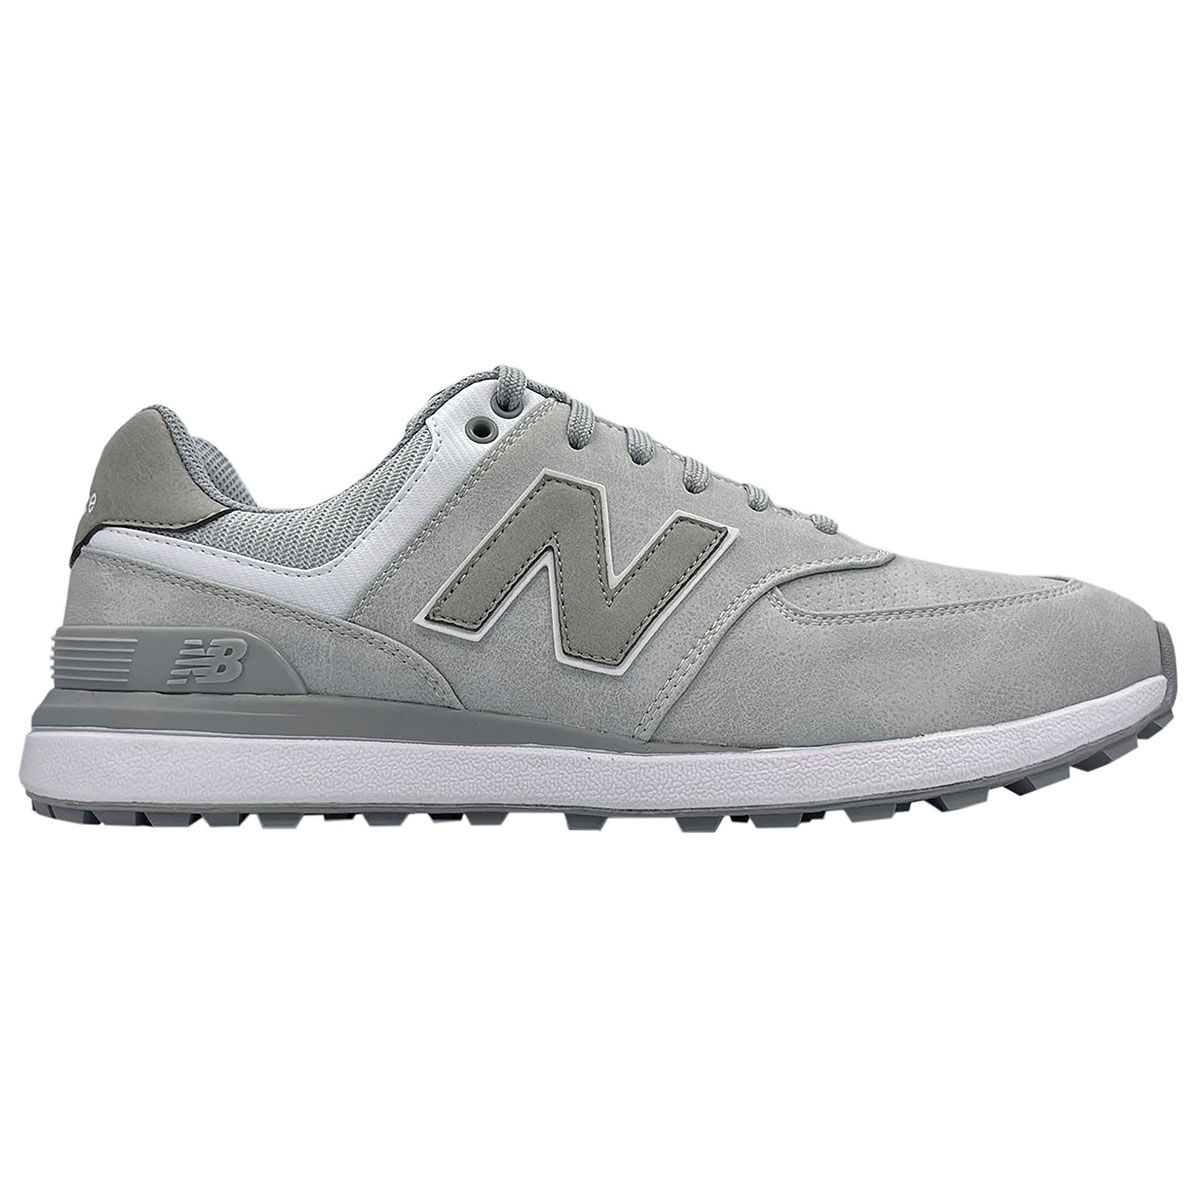 New Balance Men’s 574 Greens v2 Waterproof Spikeless Golf Shoes, Mens, Light grey, 8 | American Golf